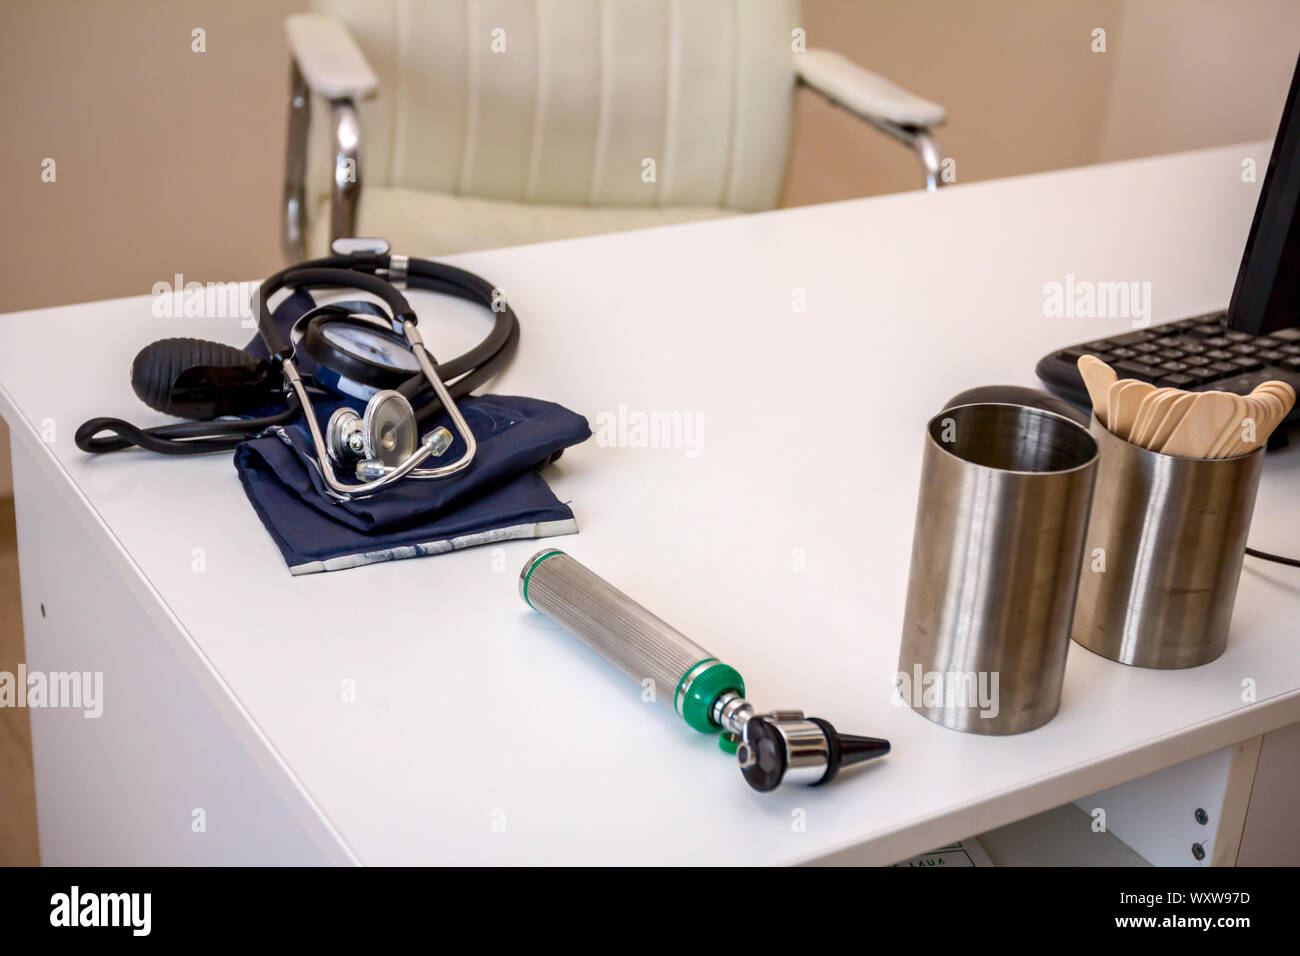 Medico la tabella con le apparecchiature mediche per esaminare la pressione sanguigna e stetoscopio. Foto Stock